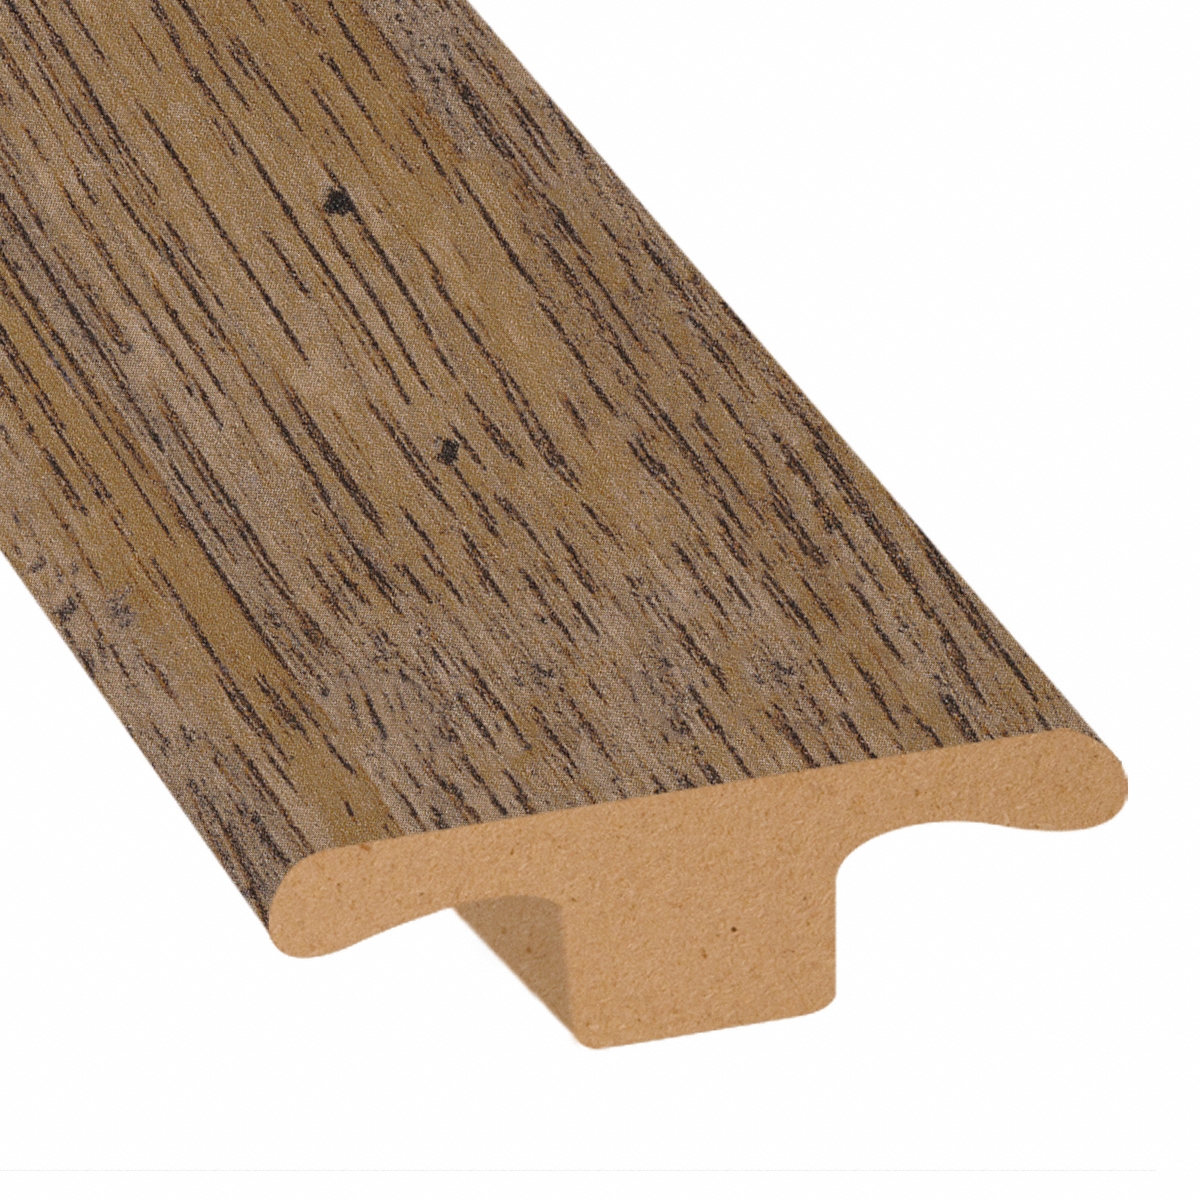 Copper Sands Oak Laminate 1 75 In Wide, Copper Sands Oak Laminate Flooring